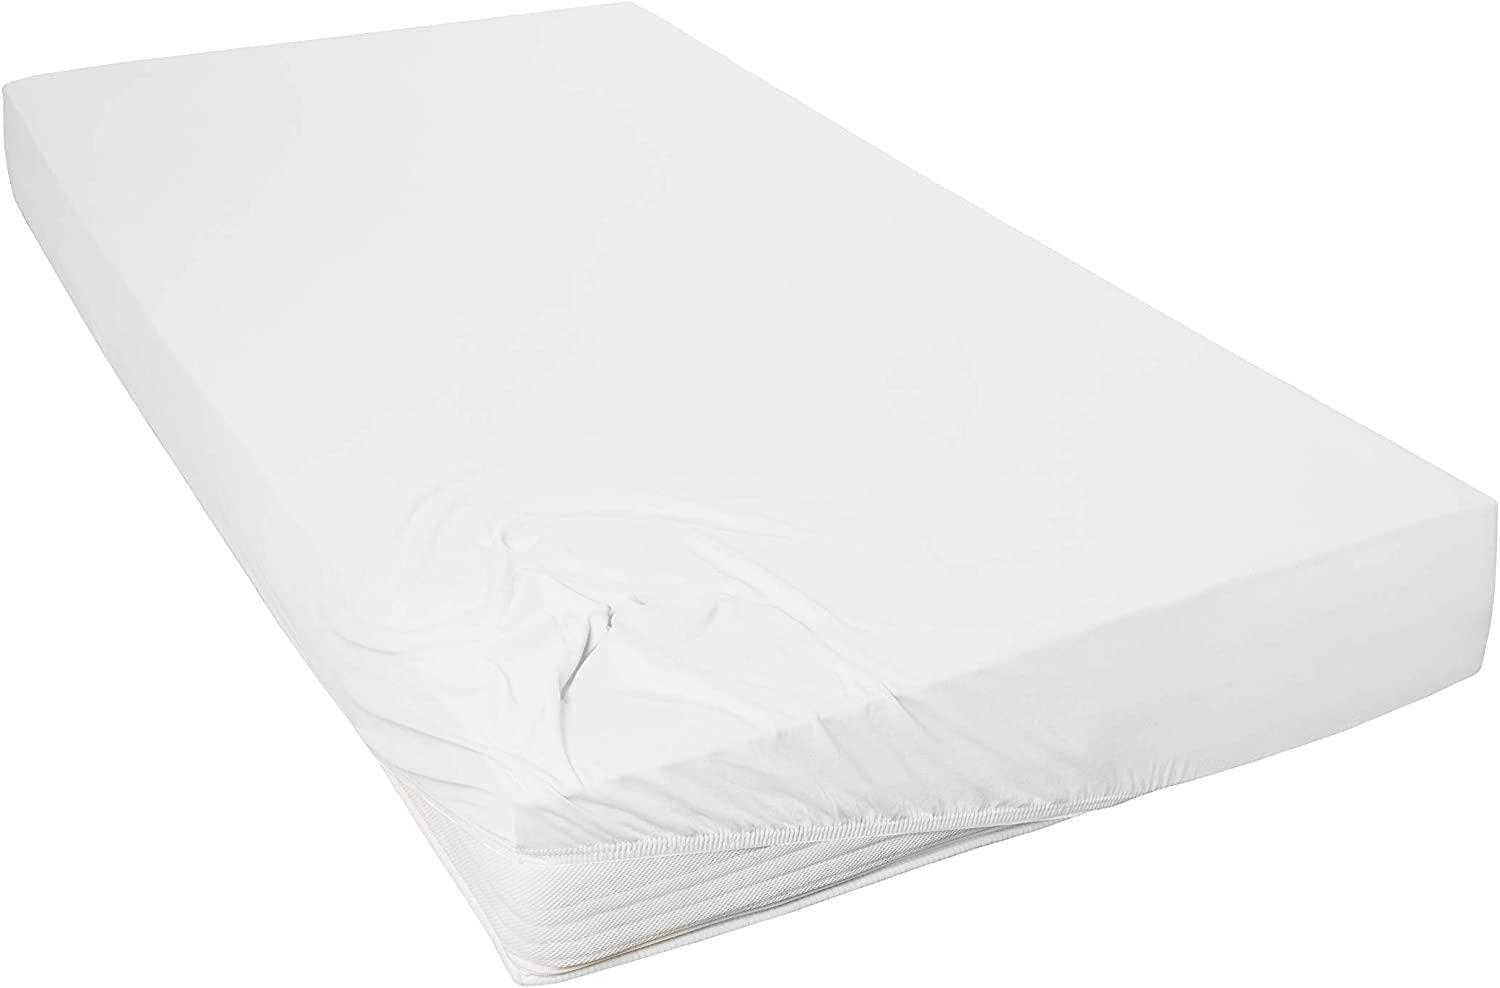 Vario Jersey-Spannbetttuch weiß, 150 x 200 cm Bild 1